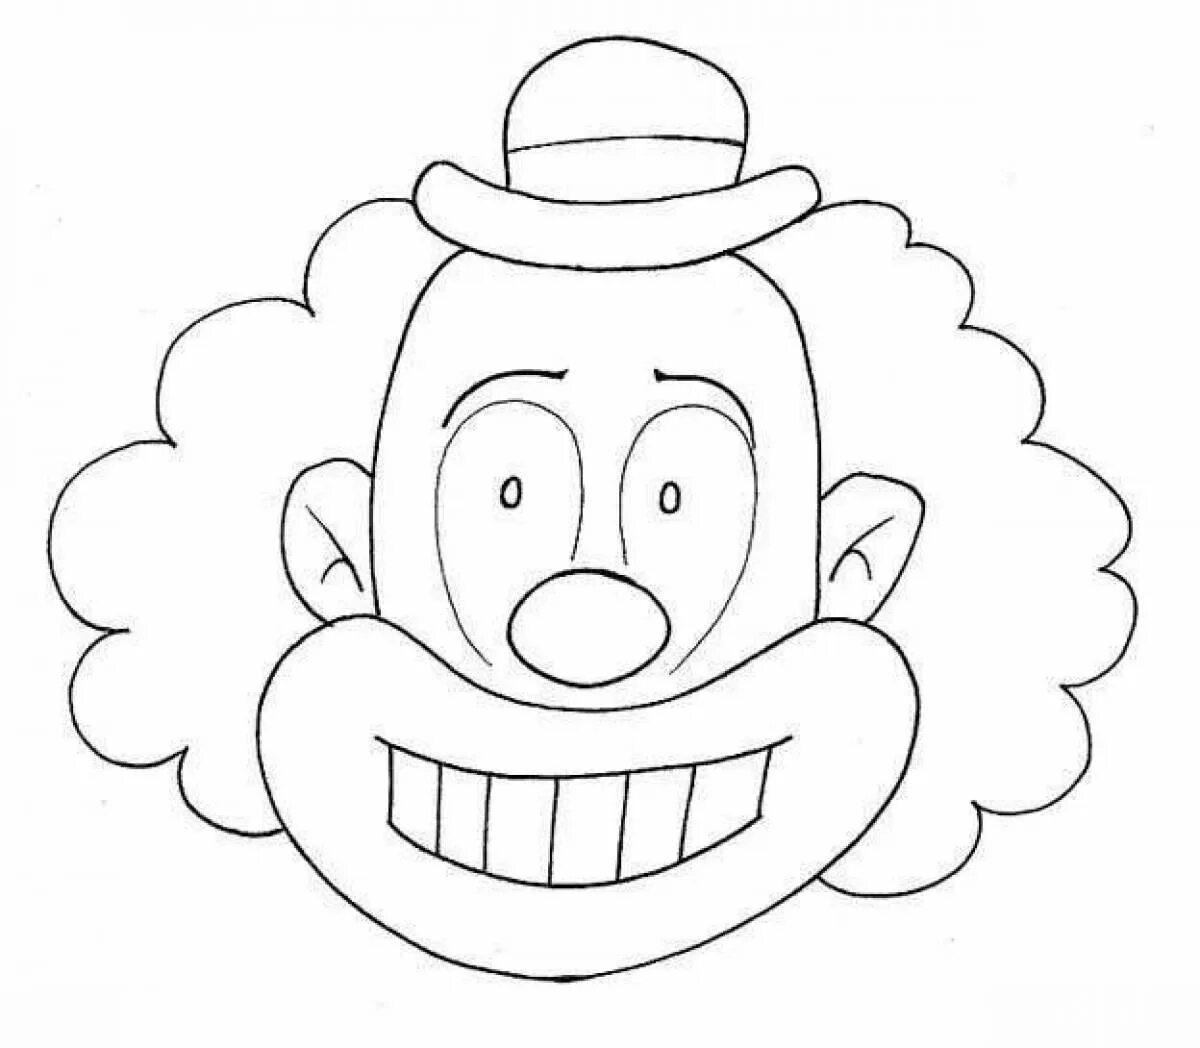 Лицо клоуна раскраска распечатать. Клоун раскраска. Клоун раскраска для детей. Веселый клоун раскраска. Голова клоуна раскраска.